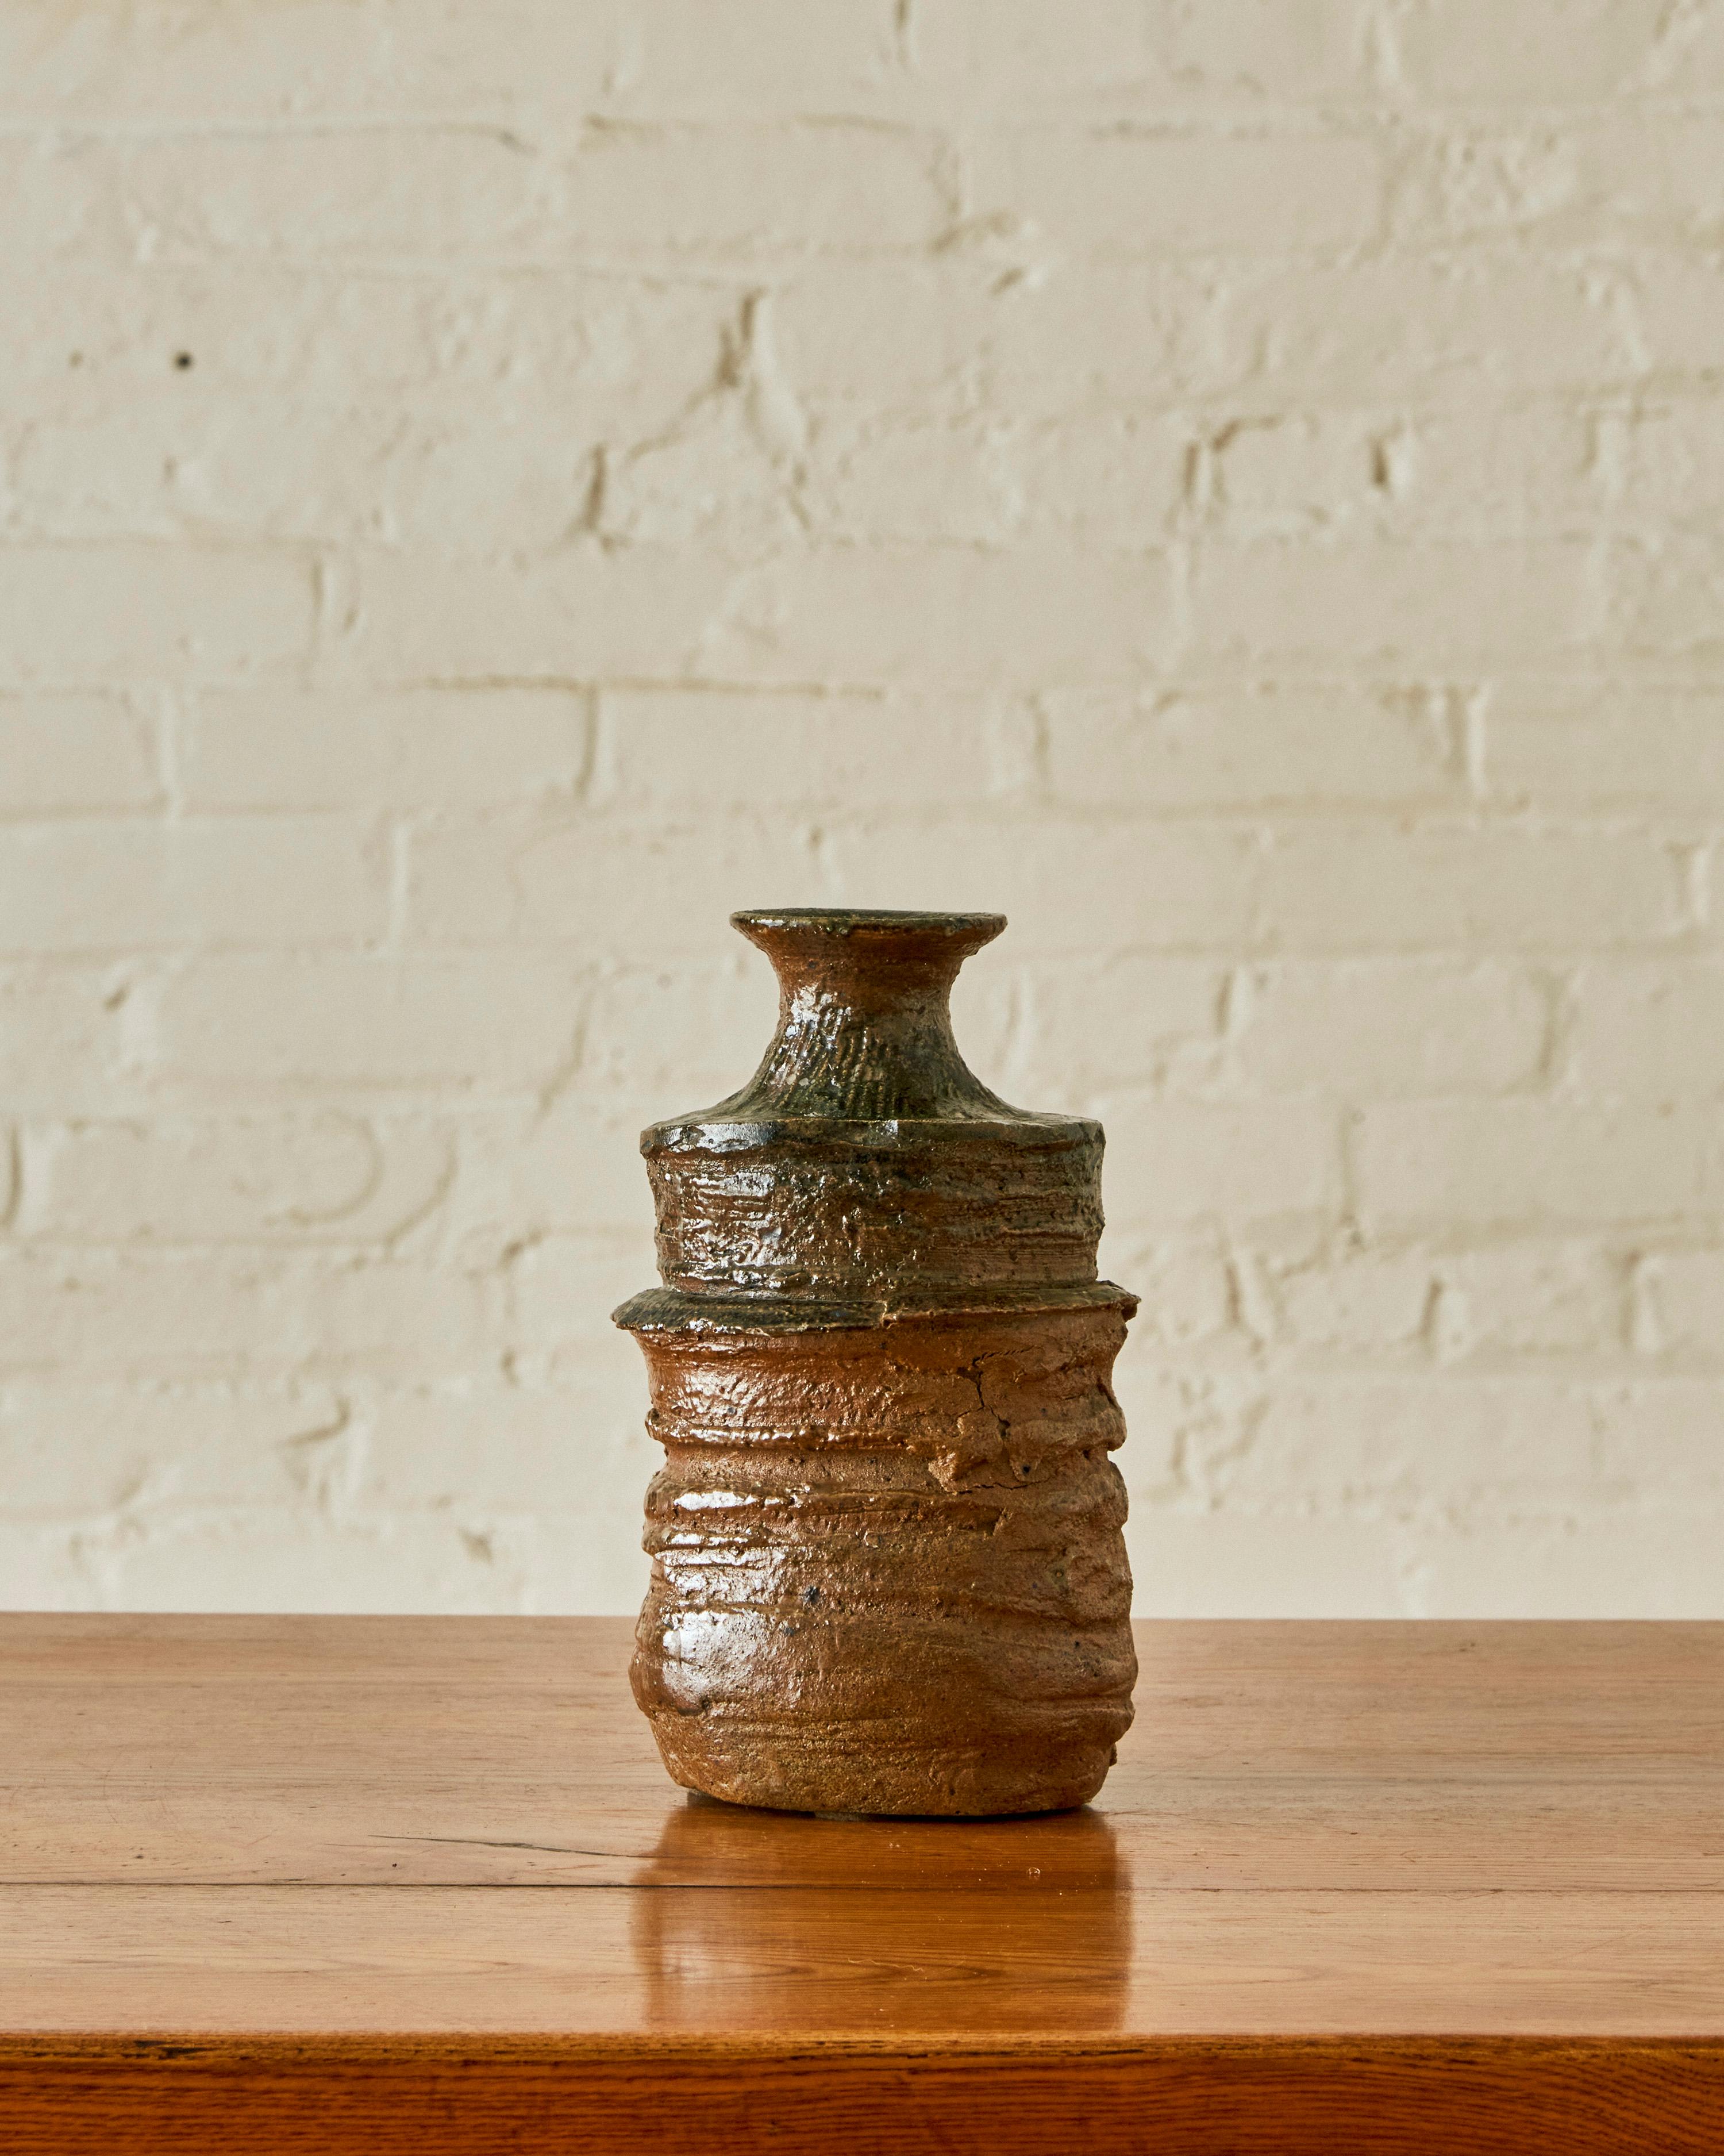 Vase en céramique de Gerard avec corps partiellement émaillé, cannelé et col évasé. Signé au verso.

